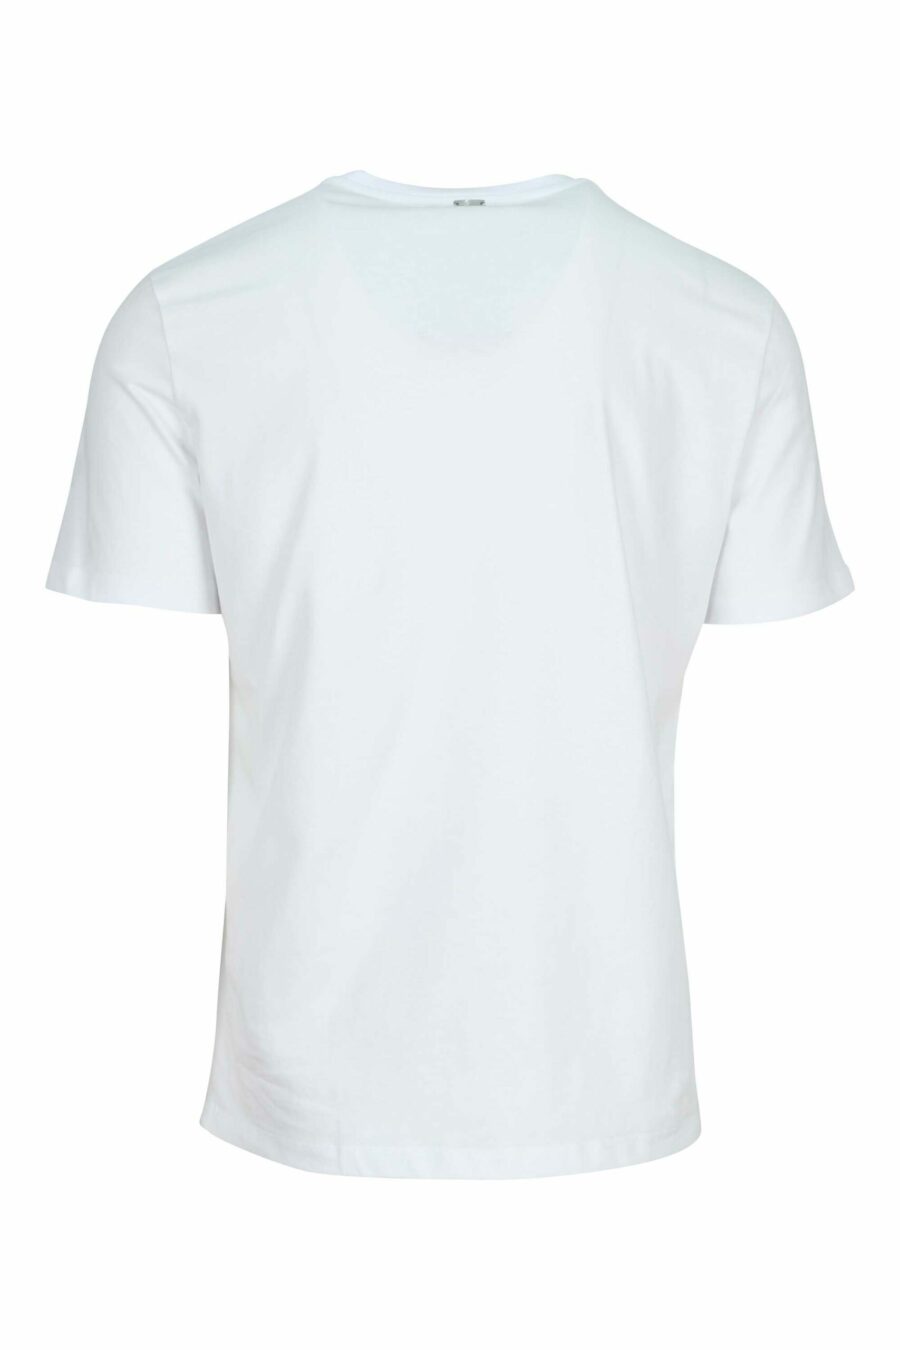 T-shirt blanc en tricot - 8055721917702 1 à l'échelle